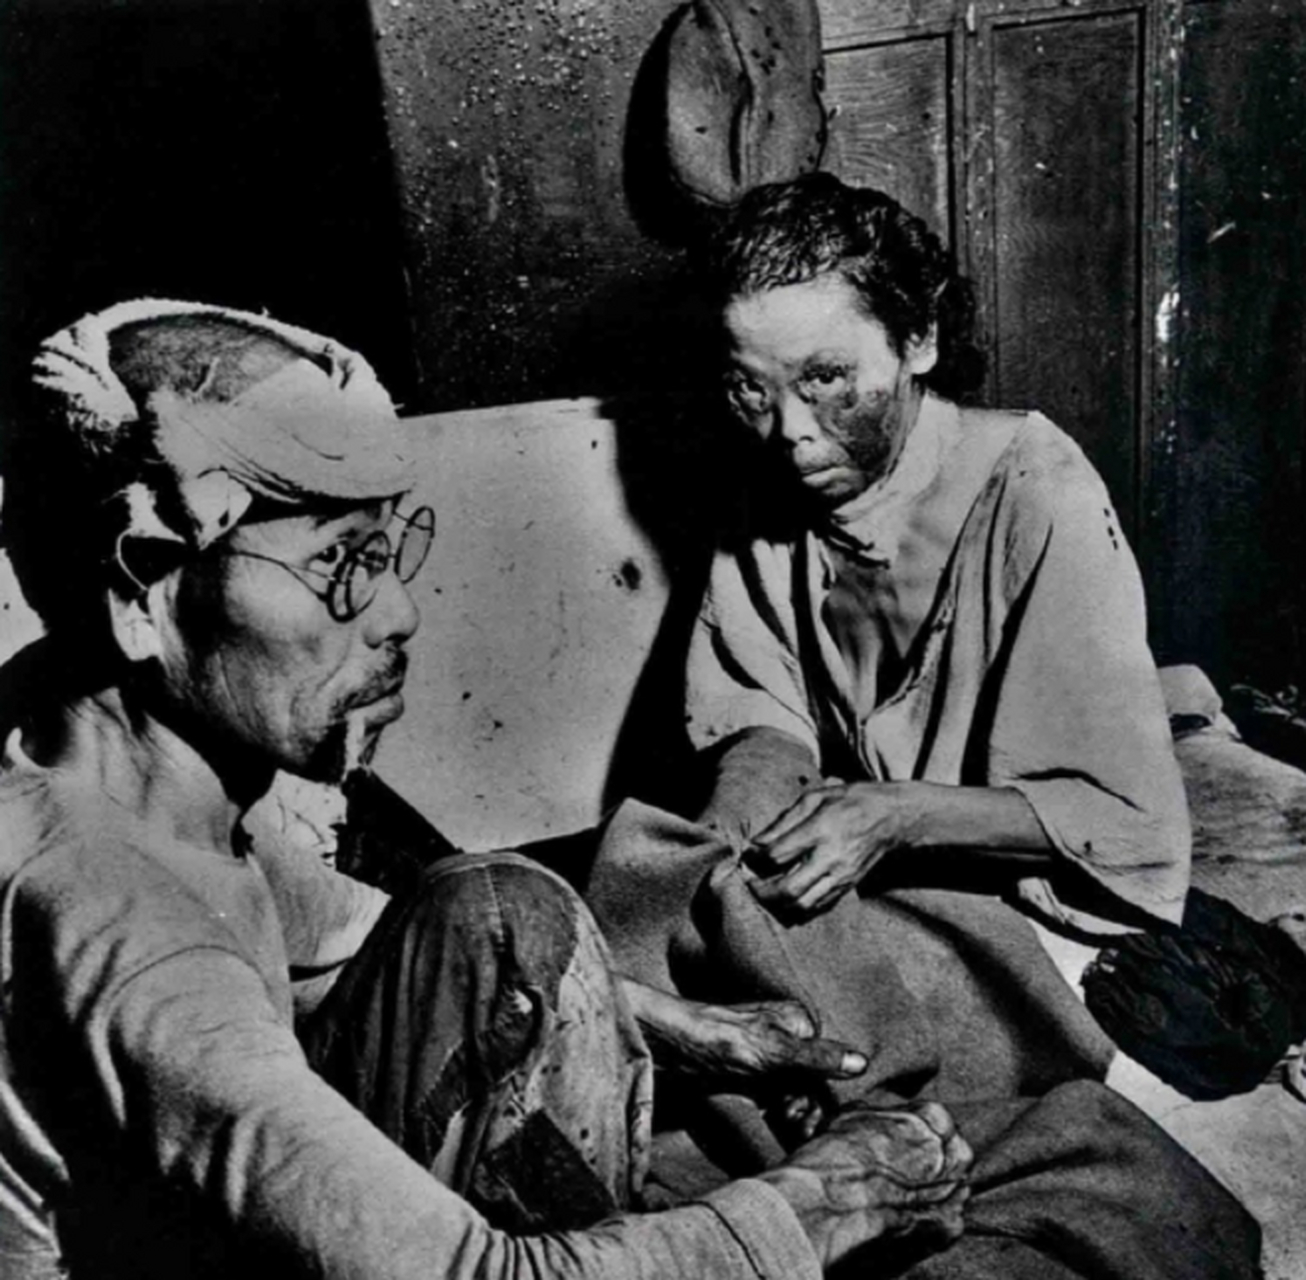 这张照片中拍摄的,是两名在广岛原子弹爆炸中的幸存者,他们都遭受了